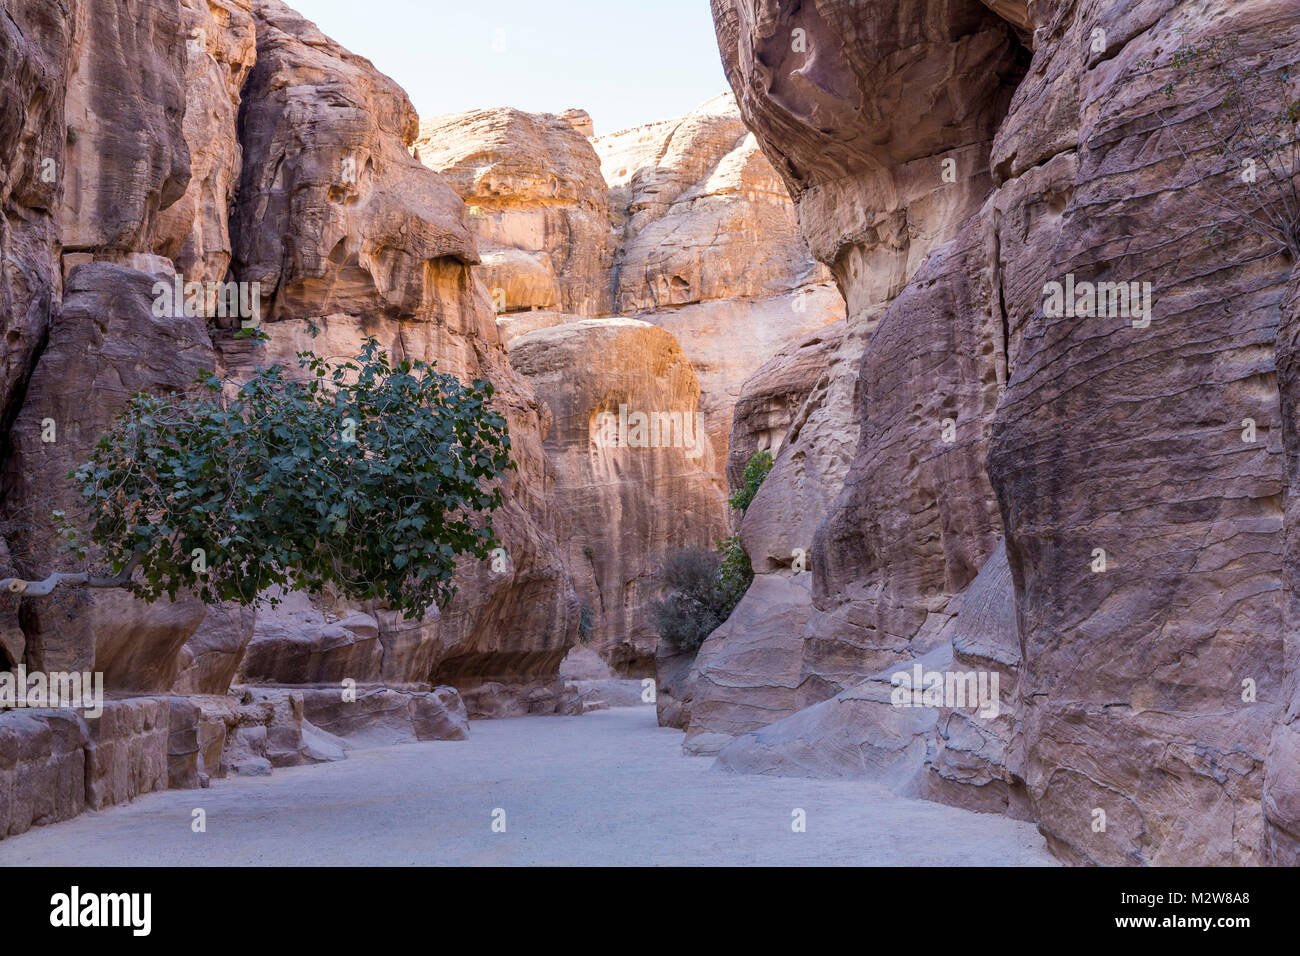 In Rock Water tv und sektiererischen Nischen gegossen, der Siq, Schlucht, 1200 m, Petra, Hauptstadt der Nabatäer, UNESCO-Weltkulturerbe, Jordanien, Asien Stockfoto